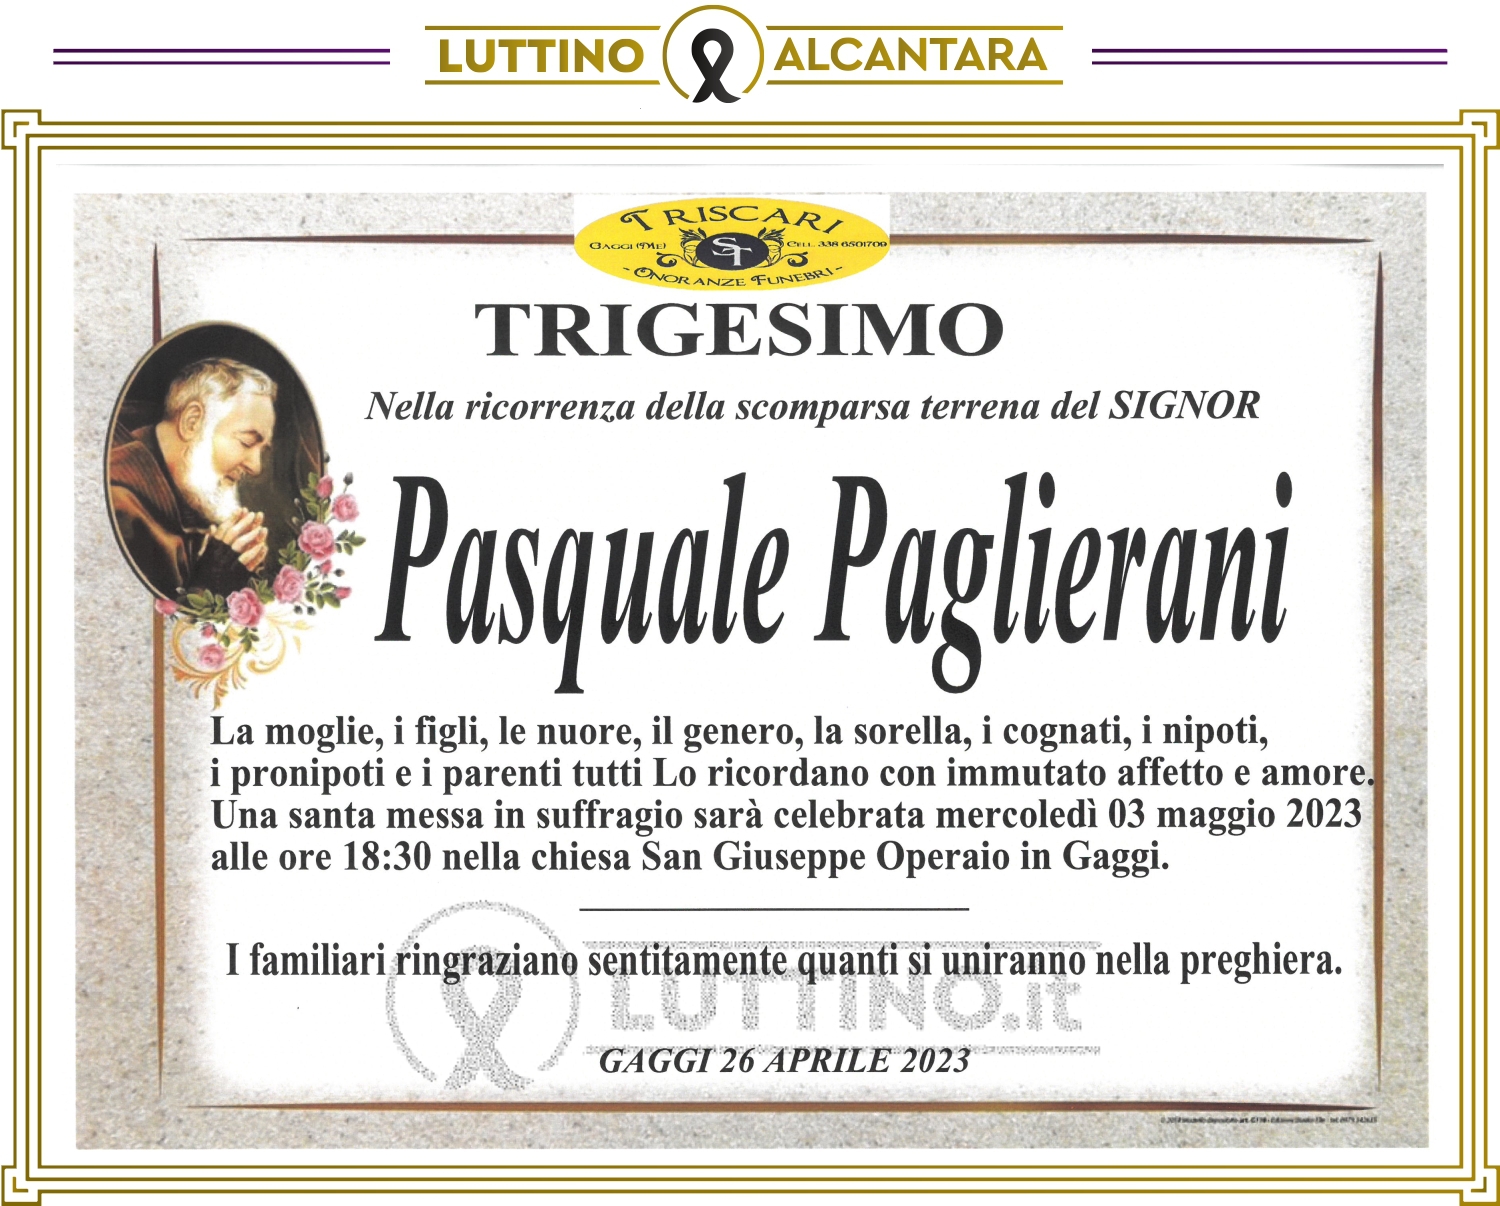 Pasquale Paglierani